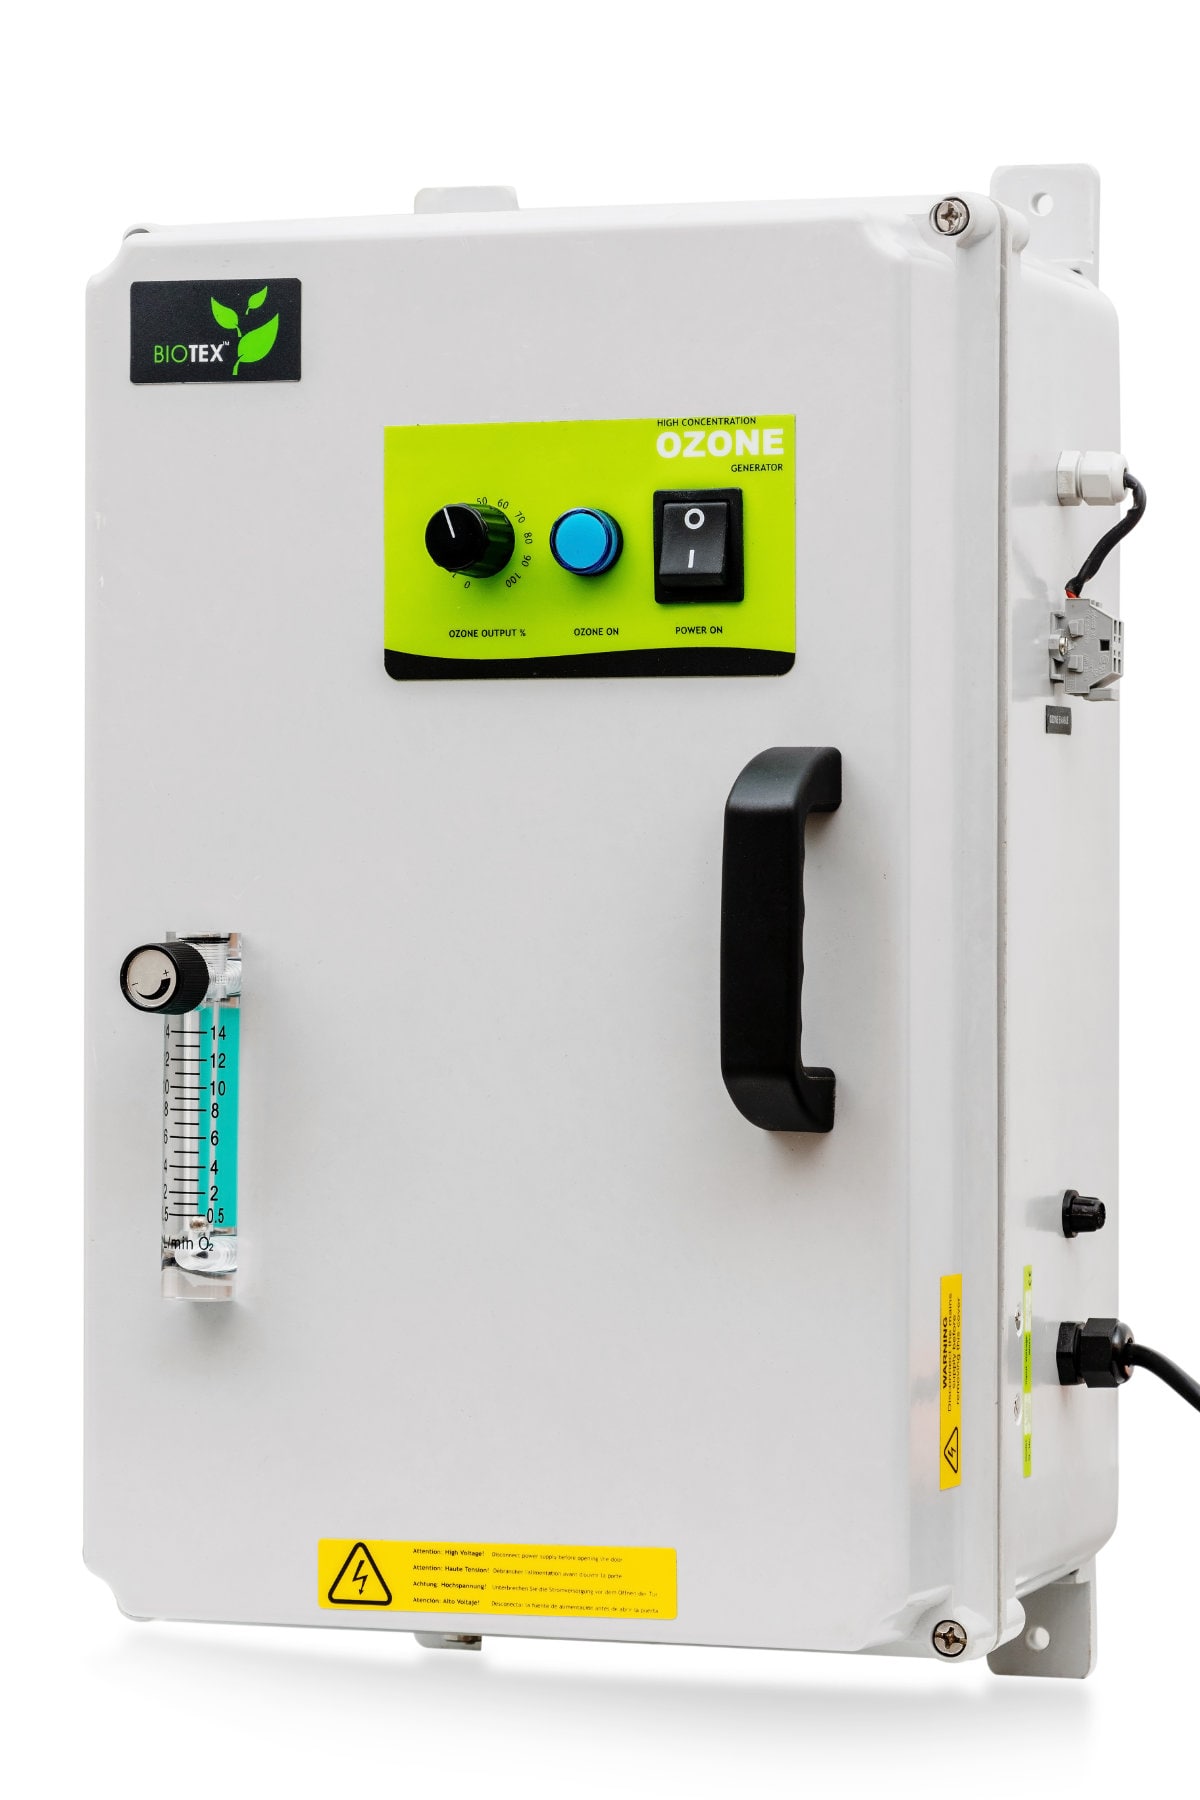 An image of Biotex's GPR Industrial Ozone generator